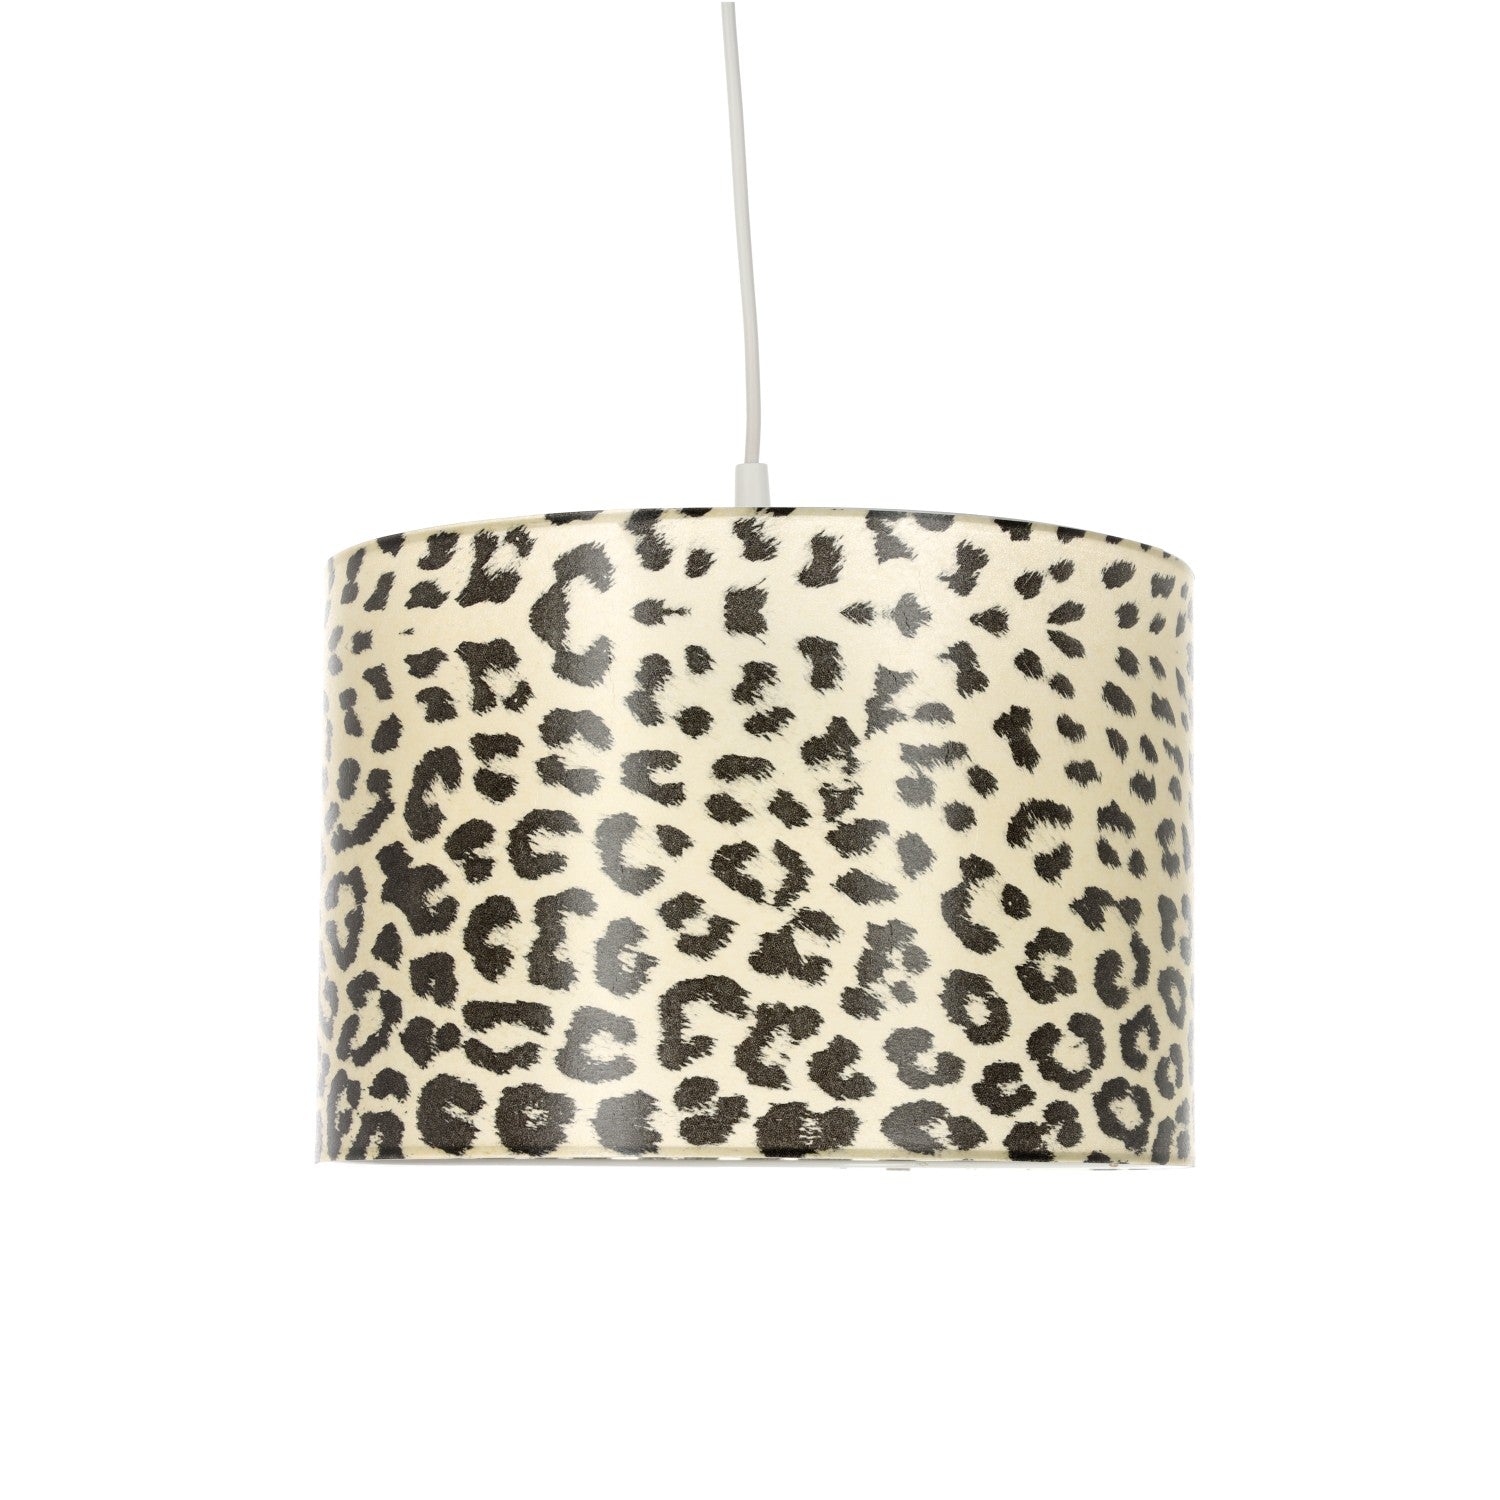 Lampa sufitowa wisząca Gepard w cętki nowoczesny design